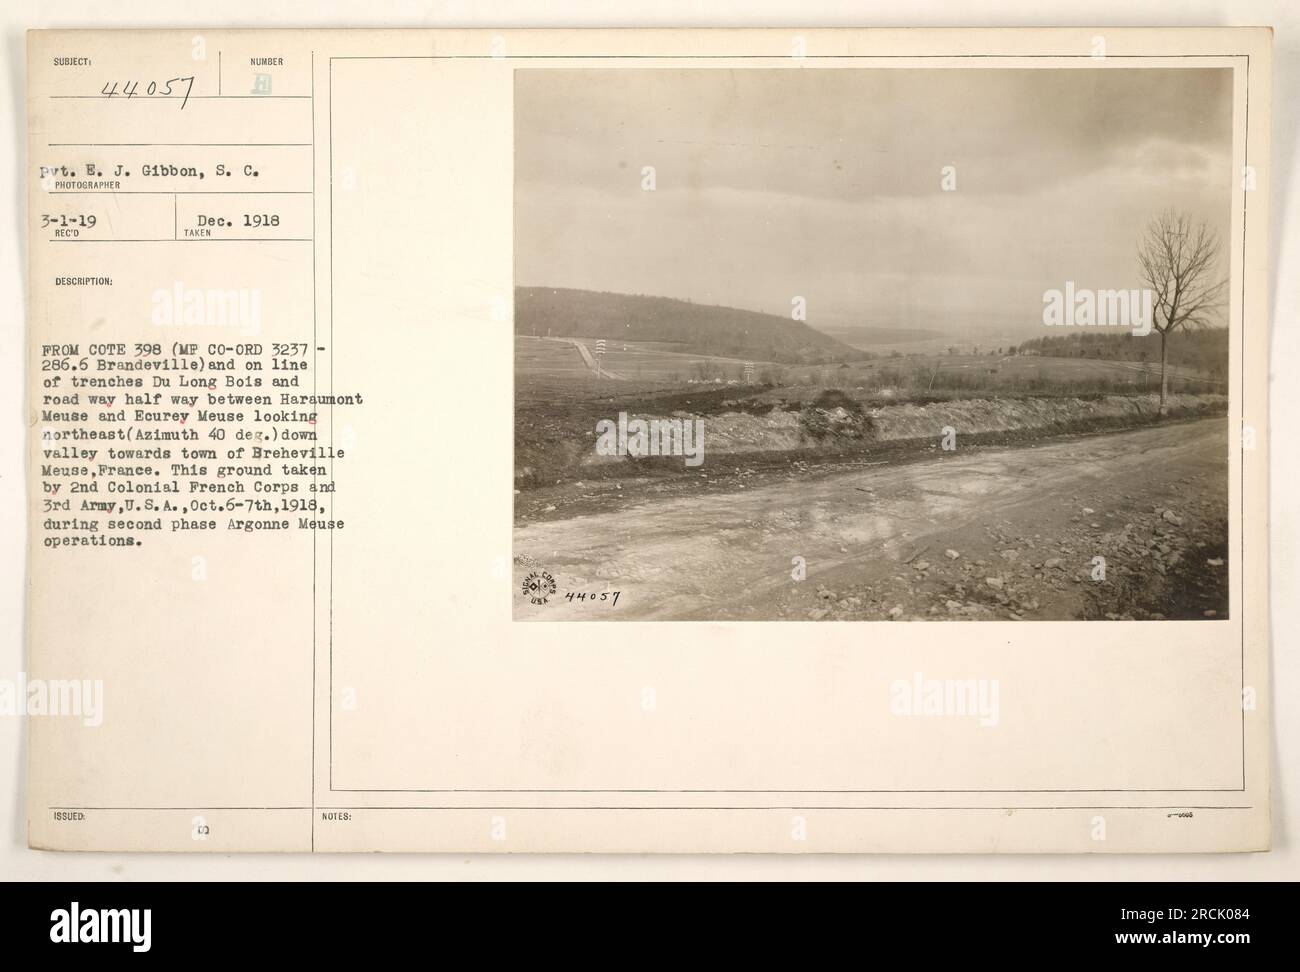 Gefreiter E. J. Gibbon vom Signalkorps wurde am 1918. Dezember fotografiert. Das Bild zeigt einen Blick auf die Gegend zwischen Haraumont Meuse und Ecurey Meuse in Frankreich. Das Bild wurde nordöstlich in Richtung der Stadt Breheville Mause aufgenommen. Dieses Gebiet wurde vom 2. Kolonialkorps und der 3. Armee, USA, während der zweiten Phase der Argonne Mause Operation vom 6. Bis 7. Oktober 1918 erfasst. Hinweis: Die Lichtbildkennzeichnung ist 081 44057. Stockfoto